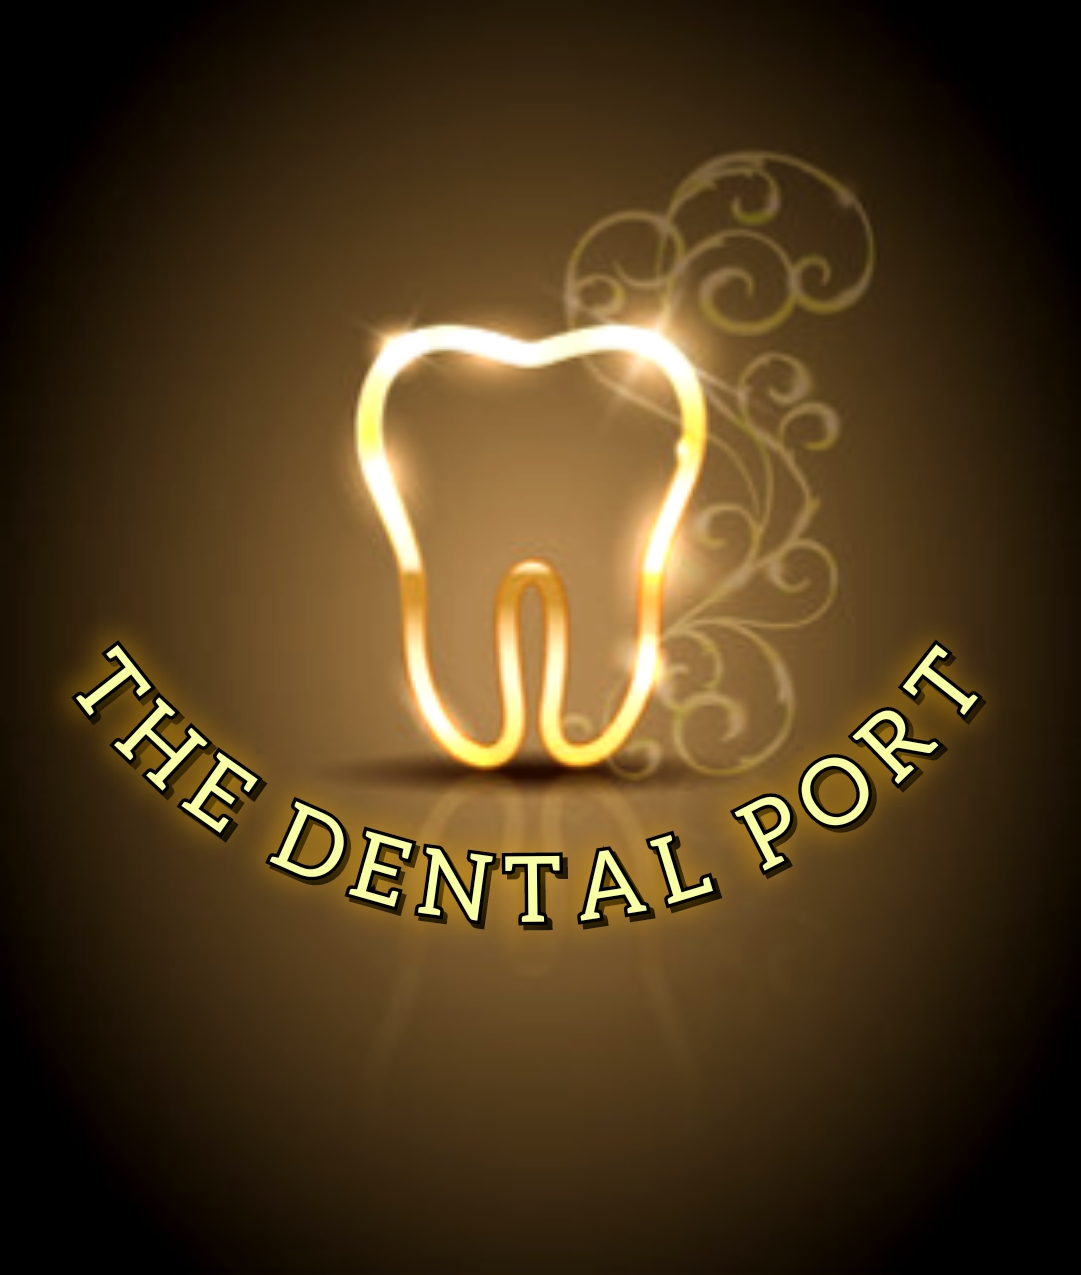 THE DENTAL PORT|Dentists|Medical Services